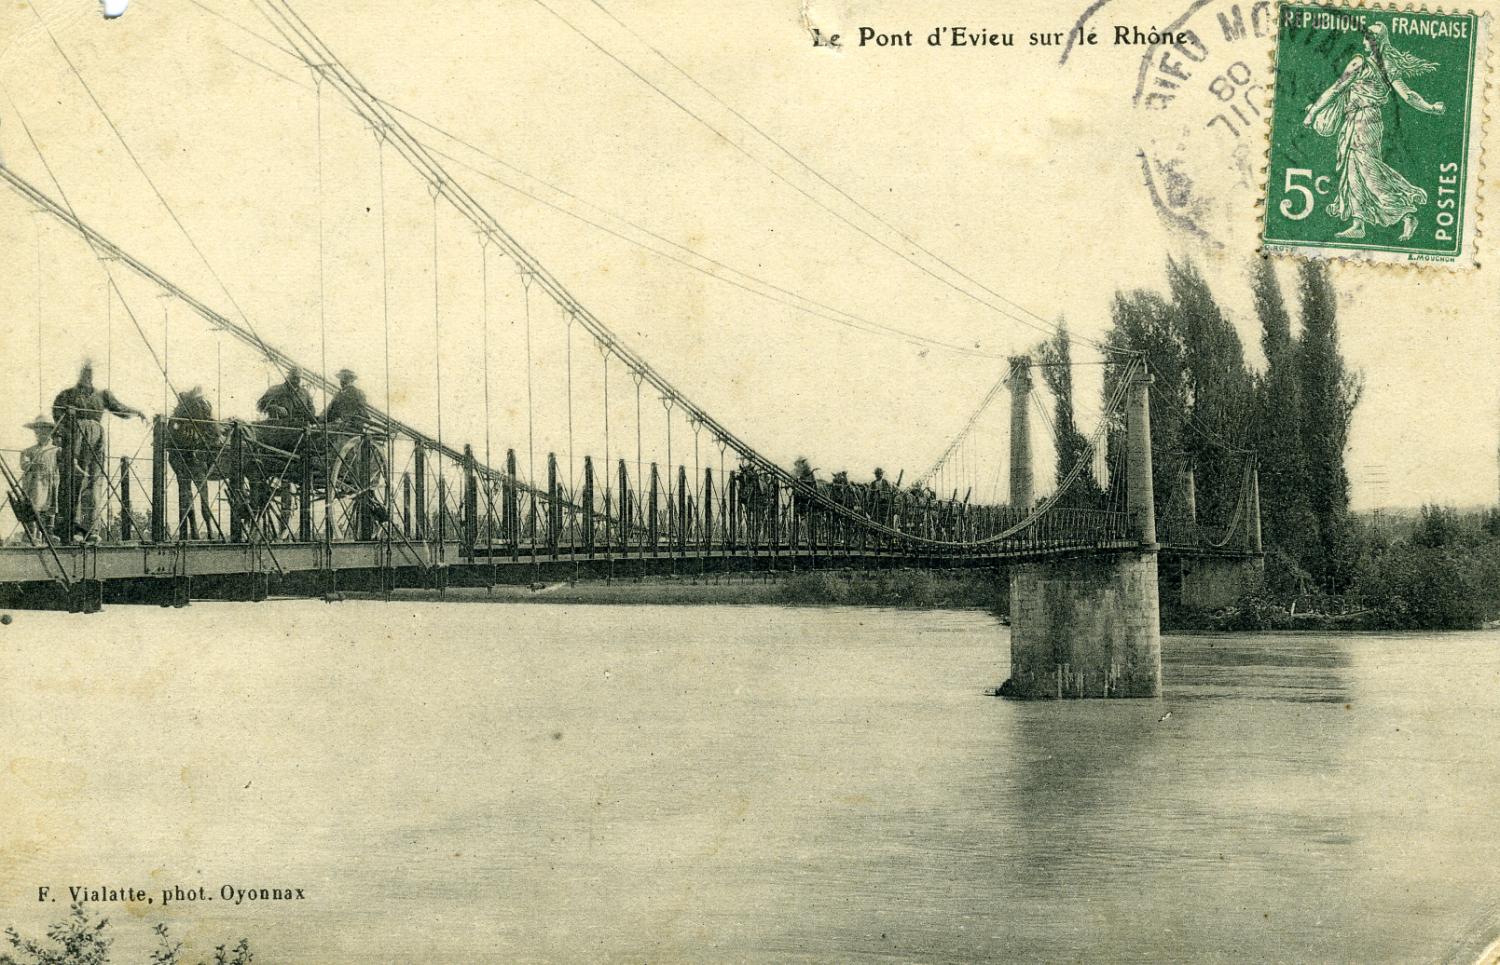 Le Pont d'Evieu sur le Rhône.